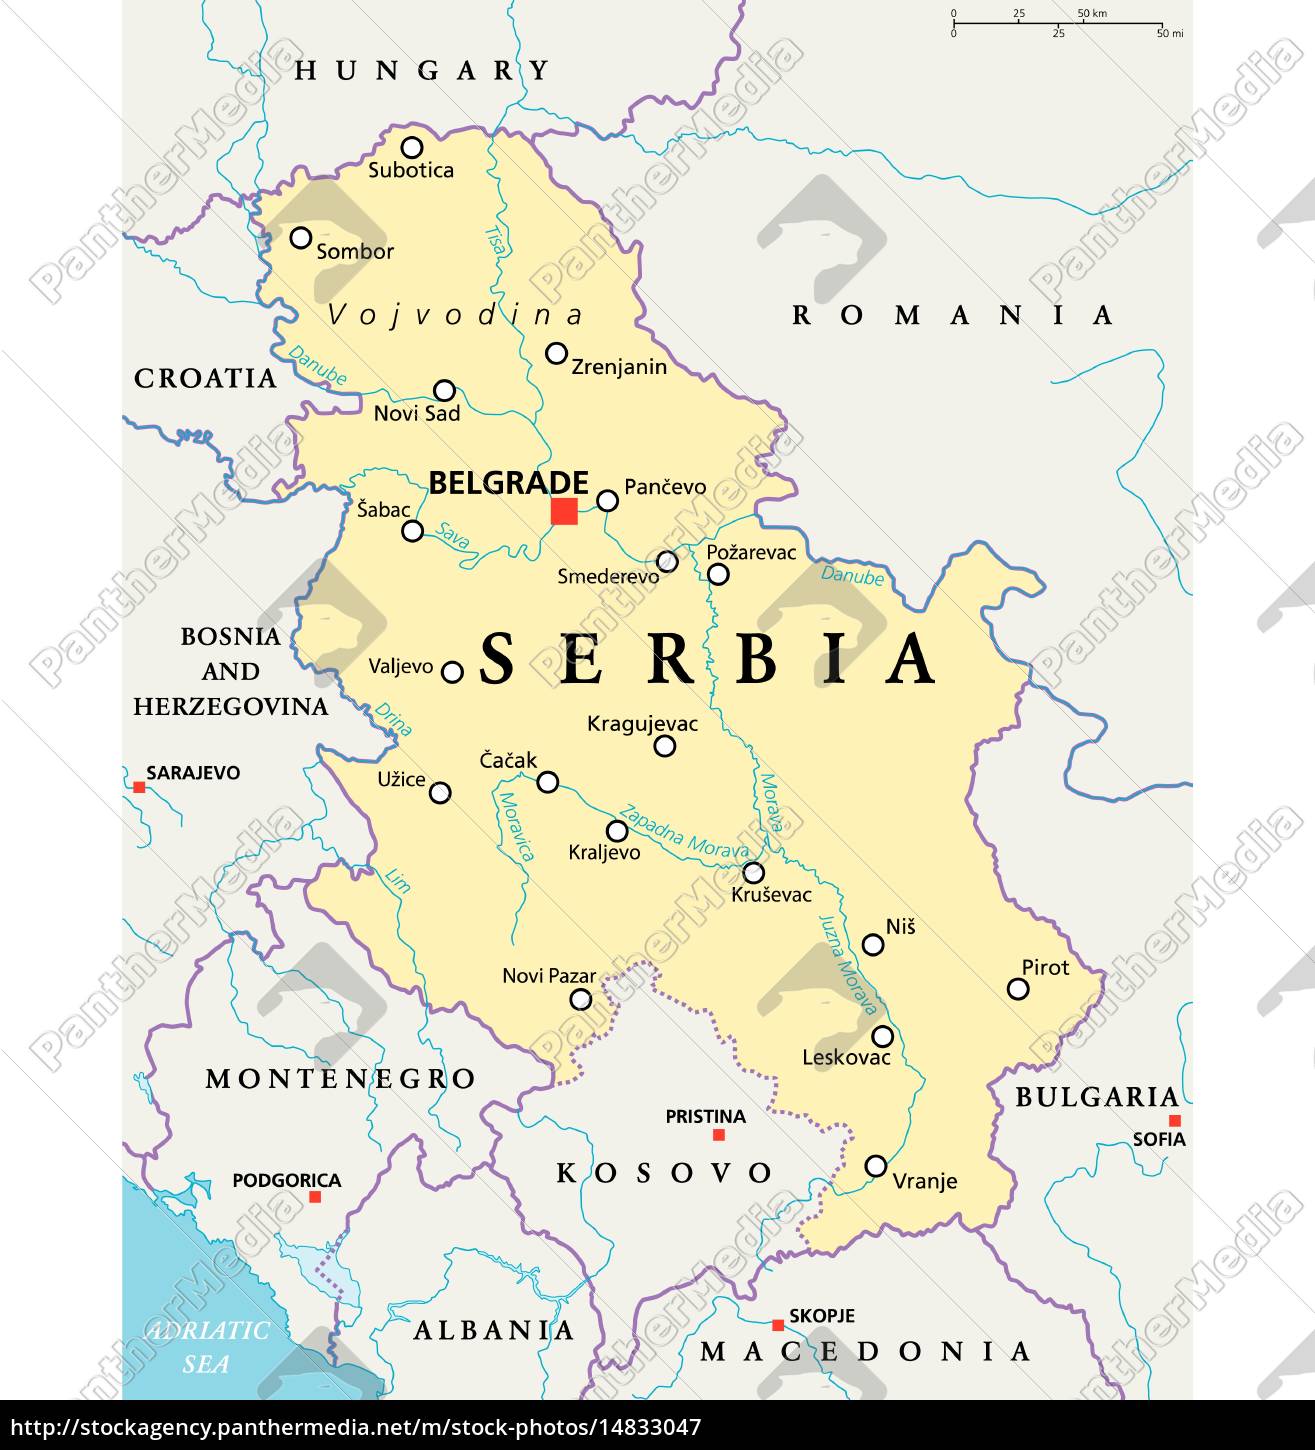 serbien politische karte - Stockfoto - #14833047 | Bildagentur PantherMedia